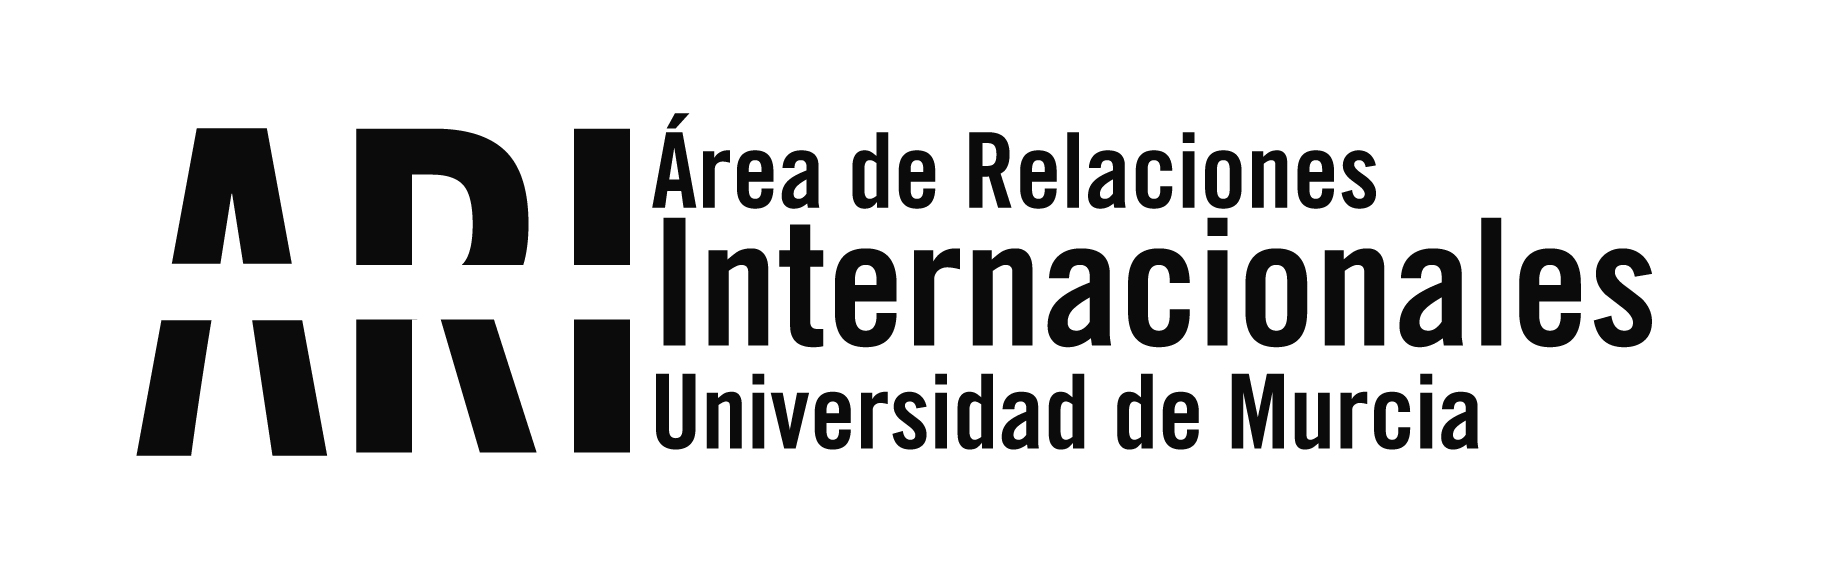 La UMU Favorecerá Bilingüismo Profesorado no Universitario - Área de Relaciones Internacionales